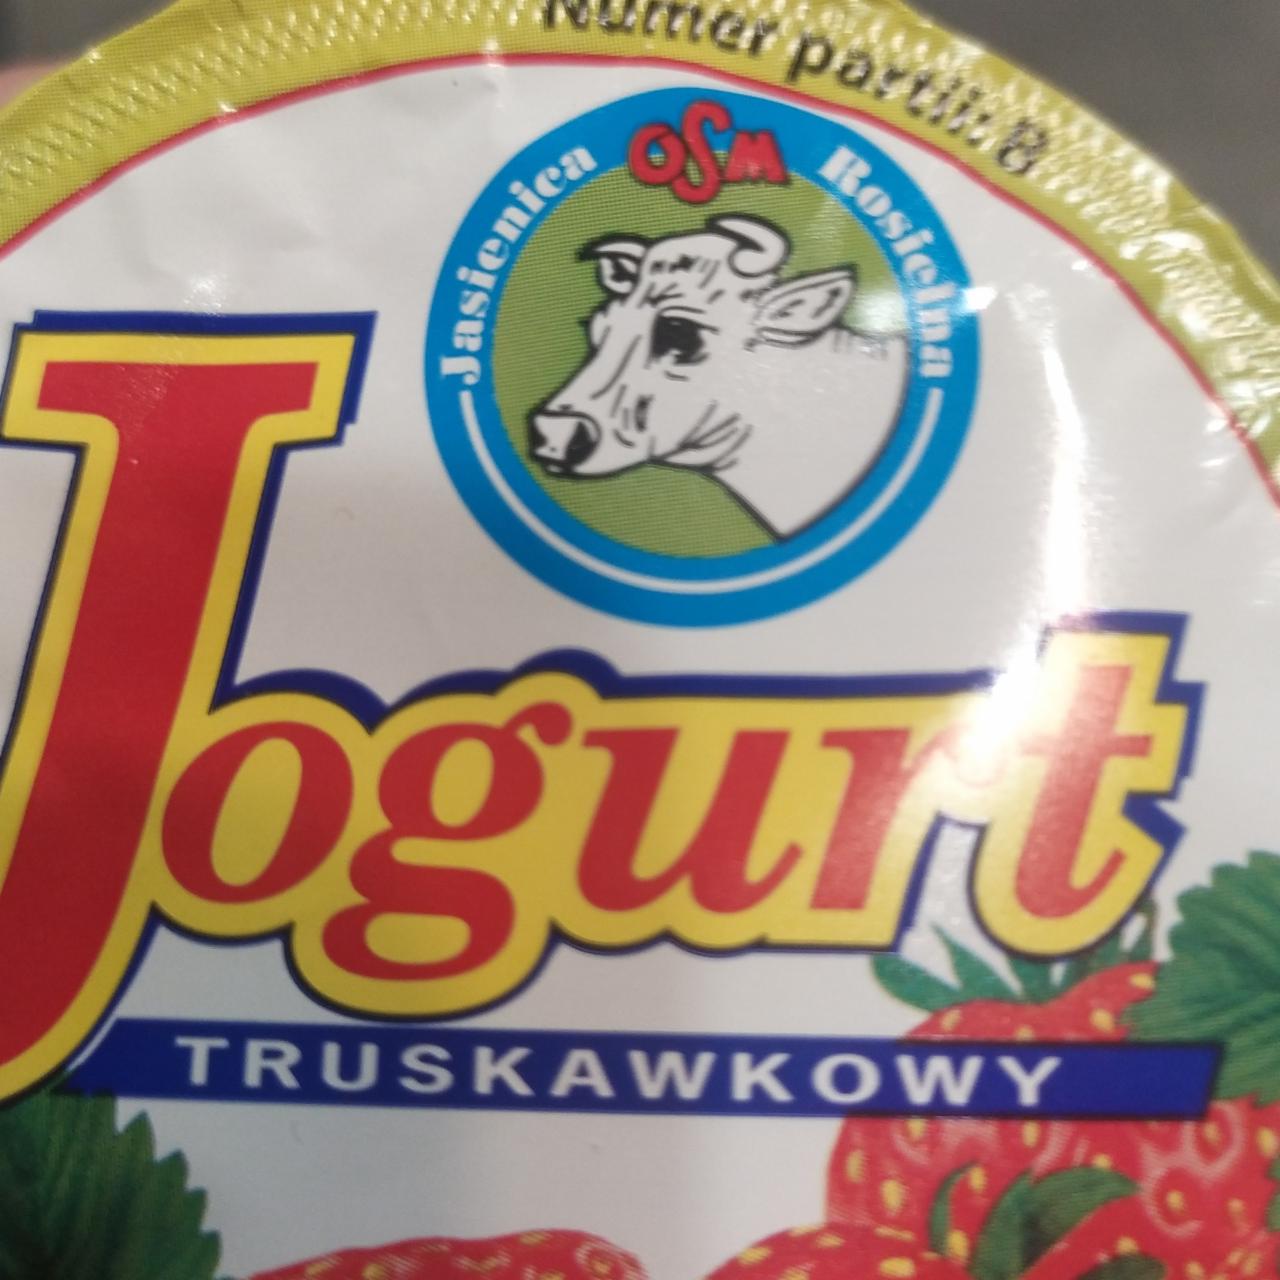 Zdjęcia - Jogurt truskawkowy OSM Jasienica Rosielna